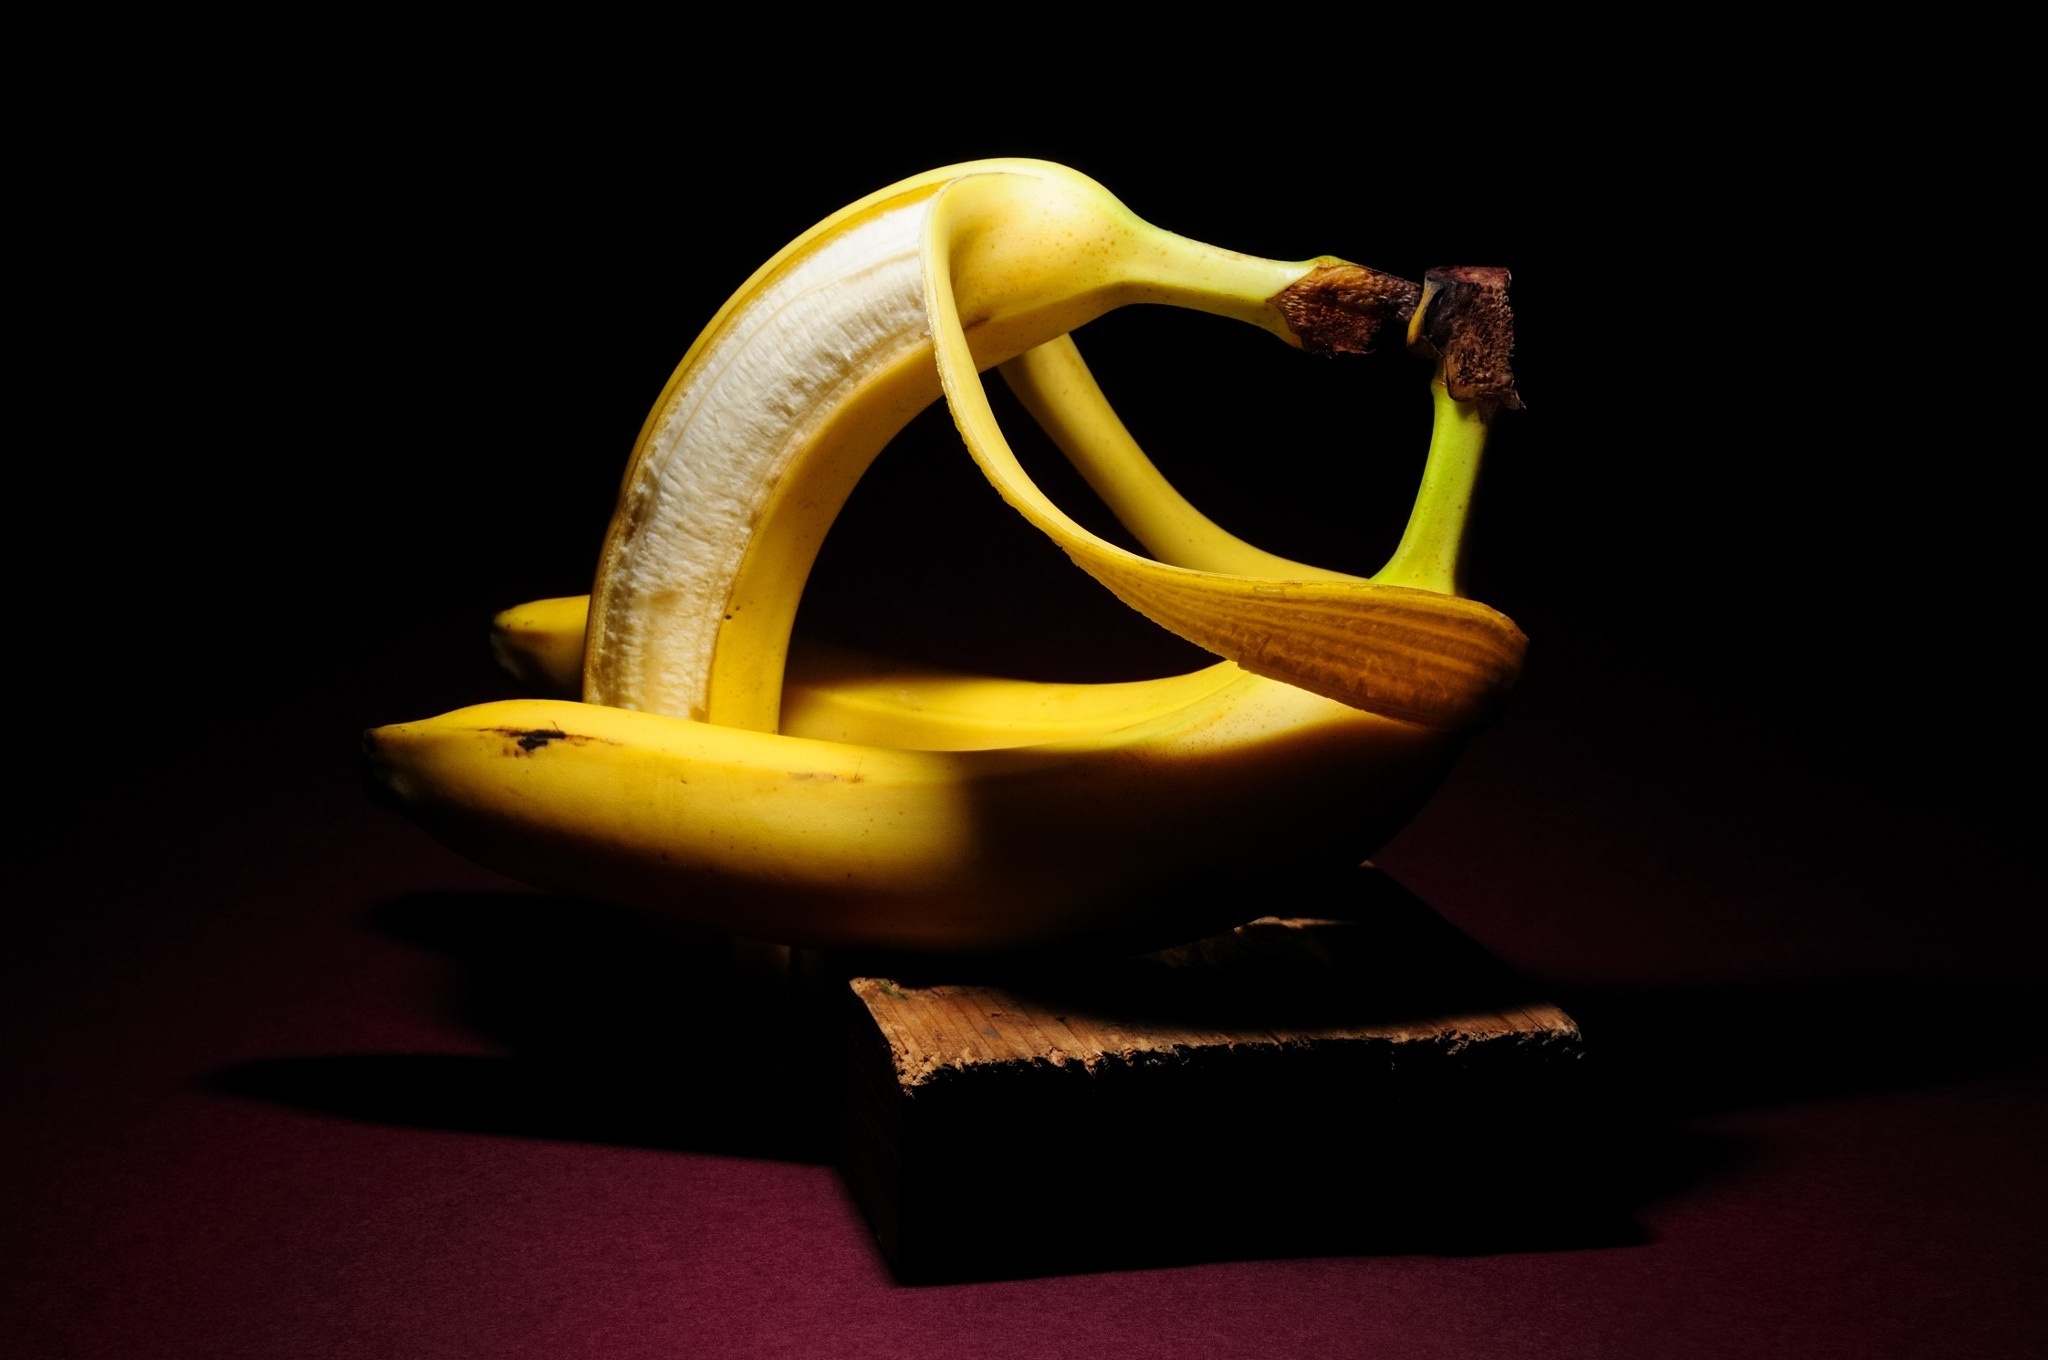 Fondos de Pantalla Plátanos Alimentos descargar imagenes